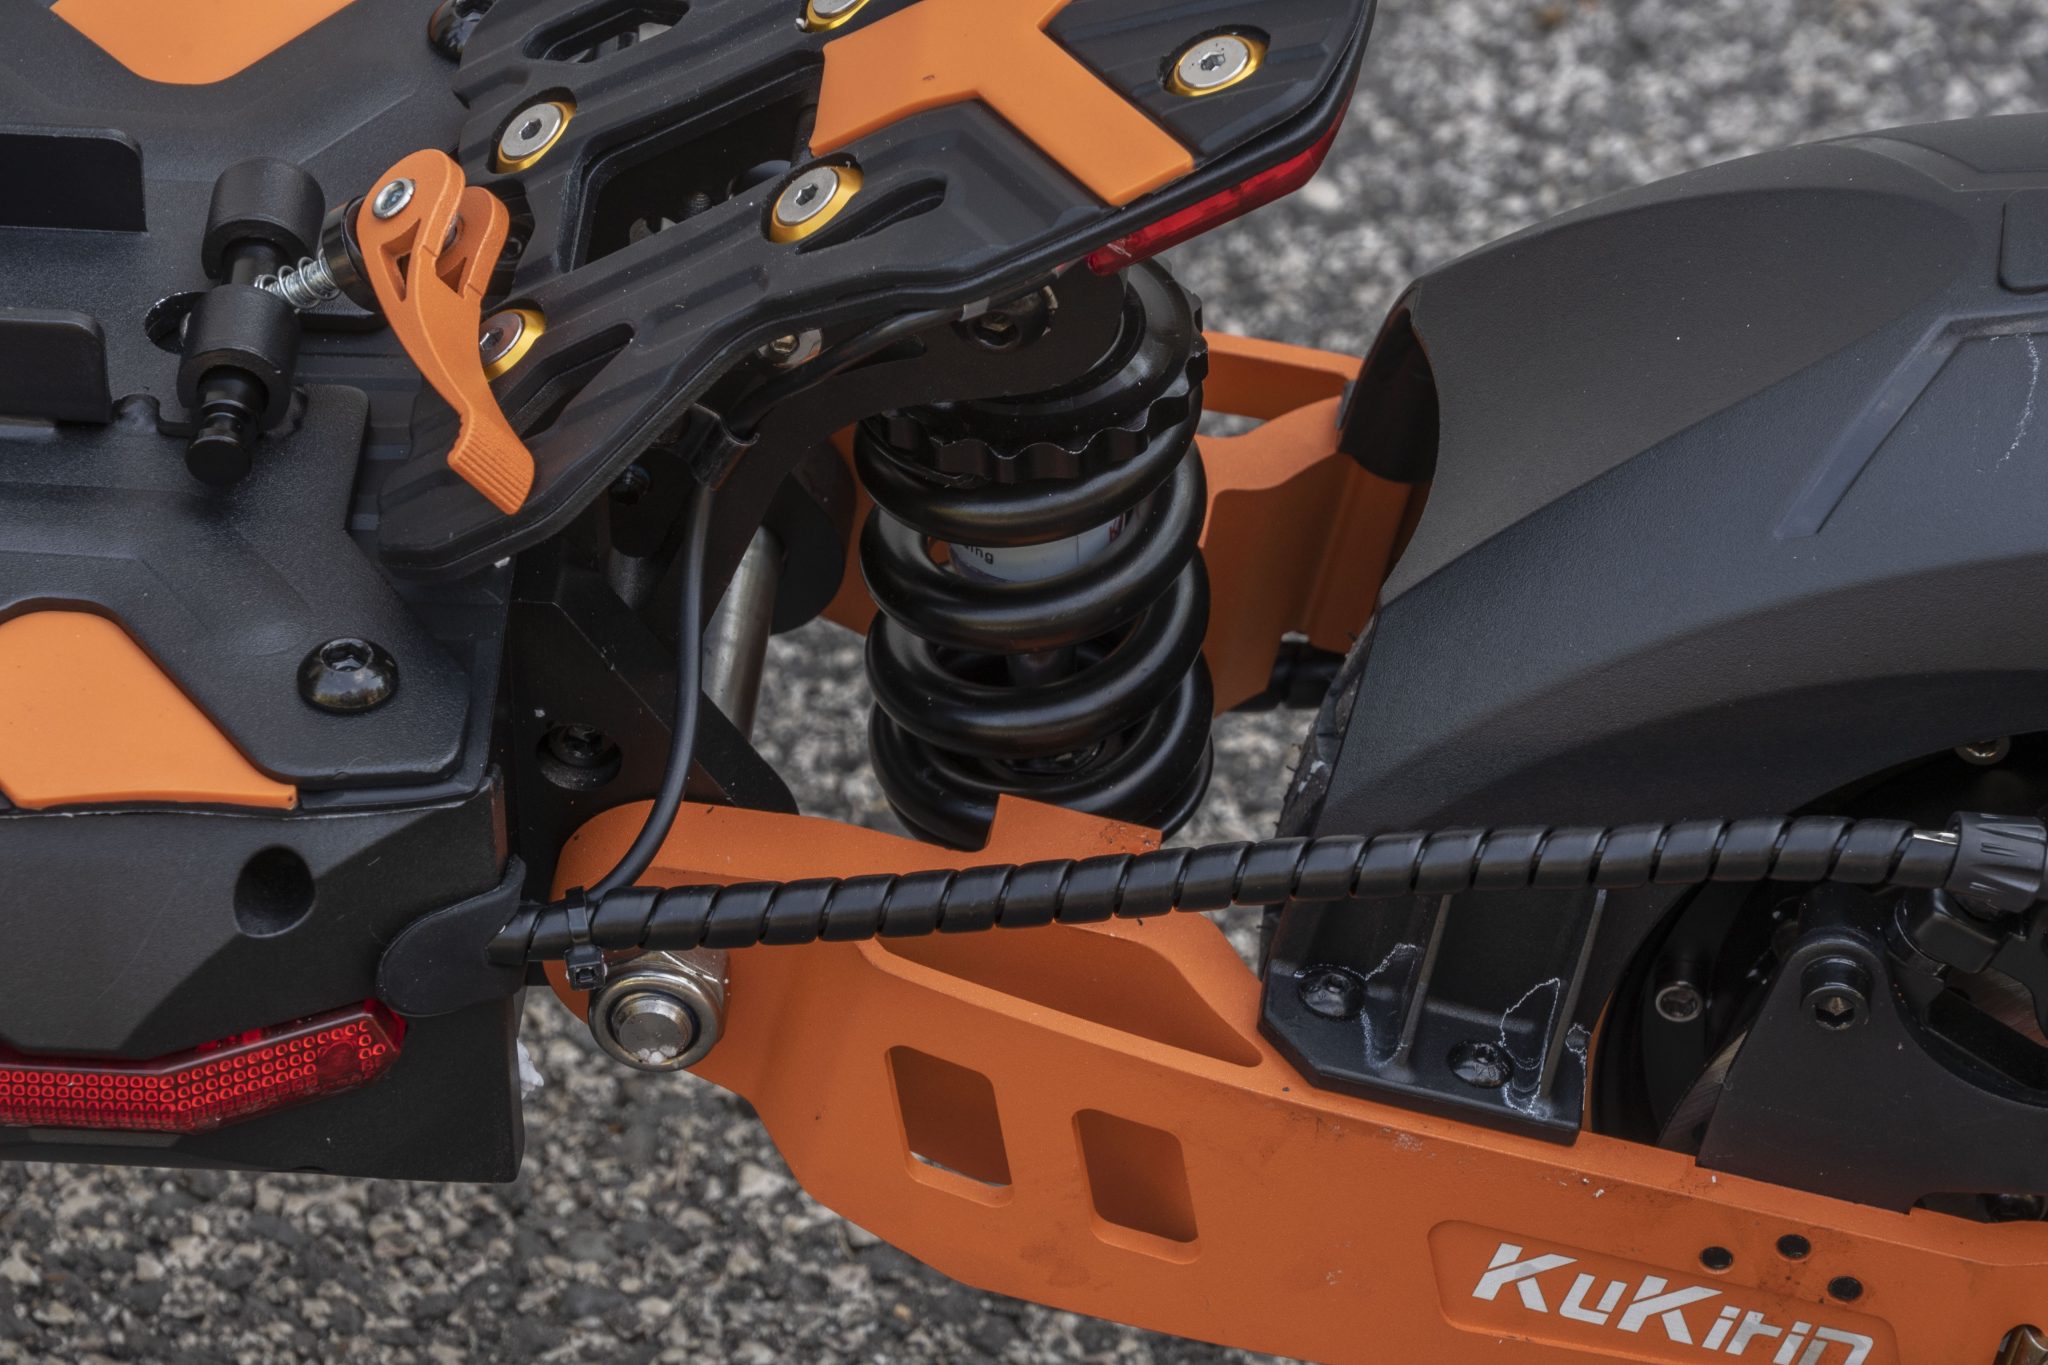 KuKirin G2 Max teszt - 1000 W-os elektromos roller, ami akár